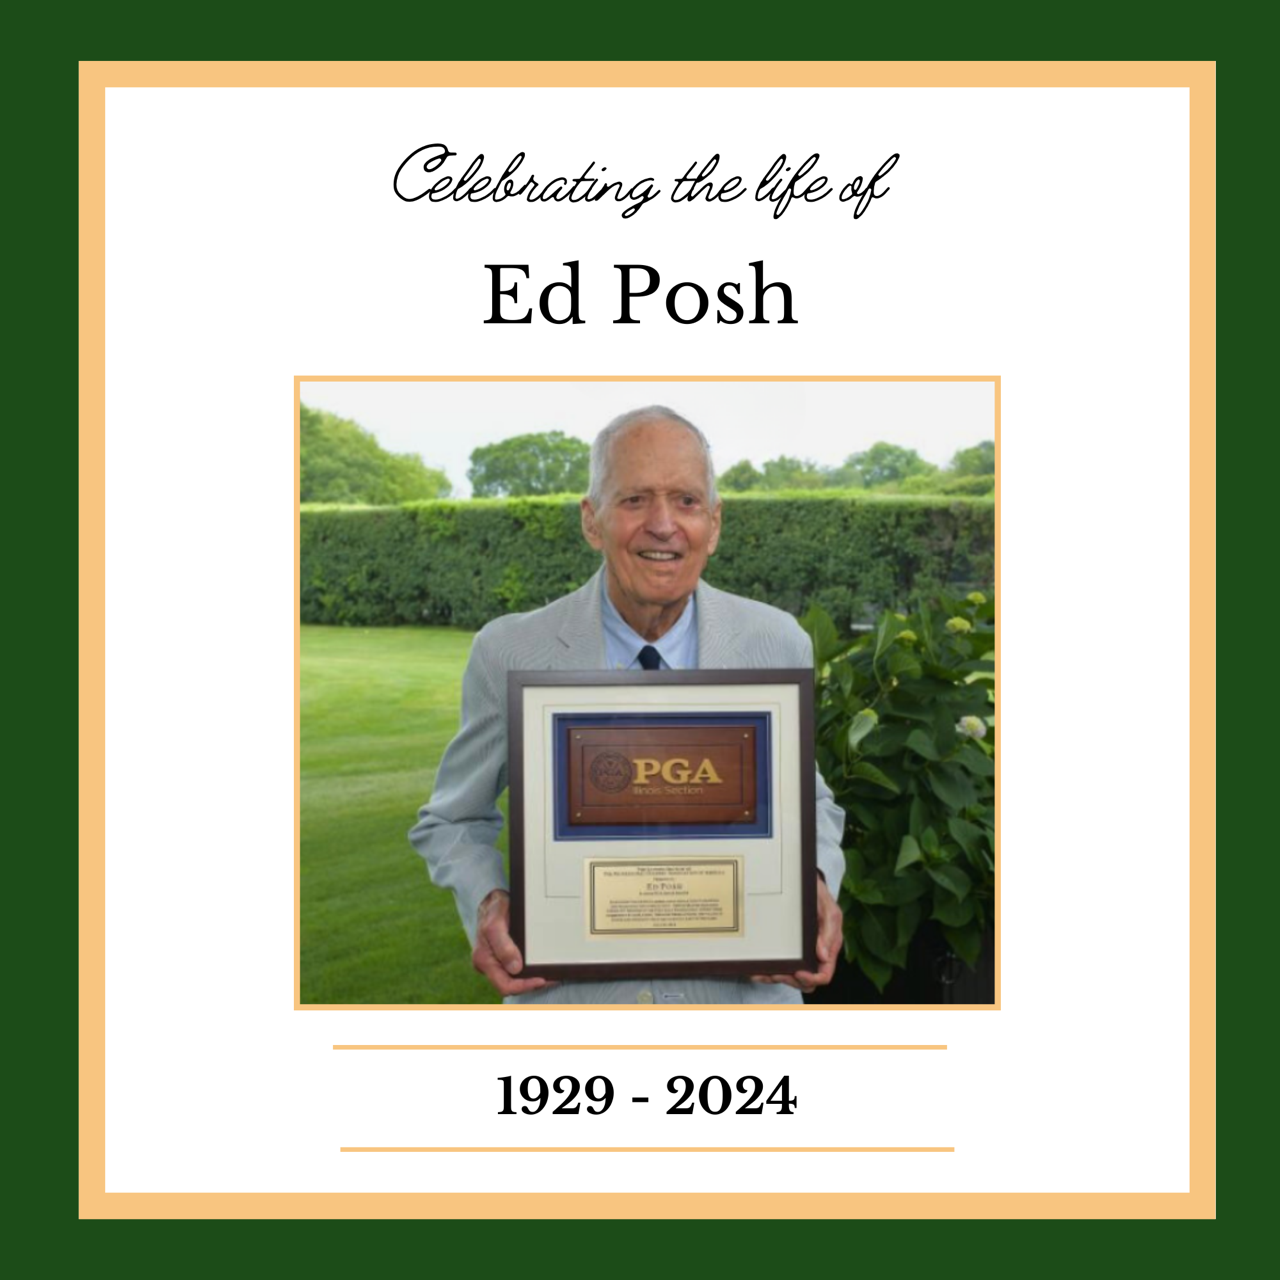 Ed Posh